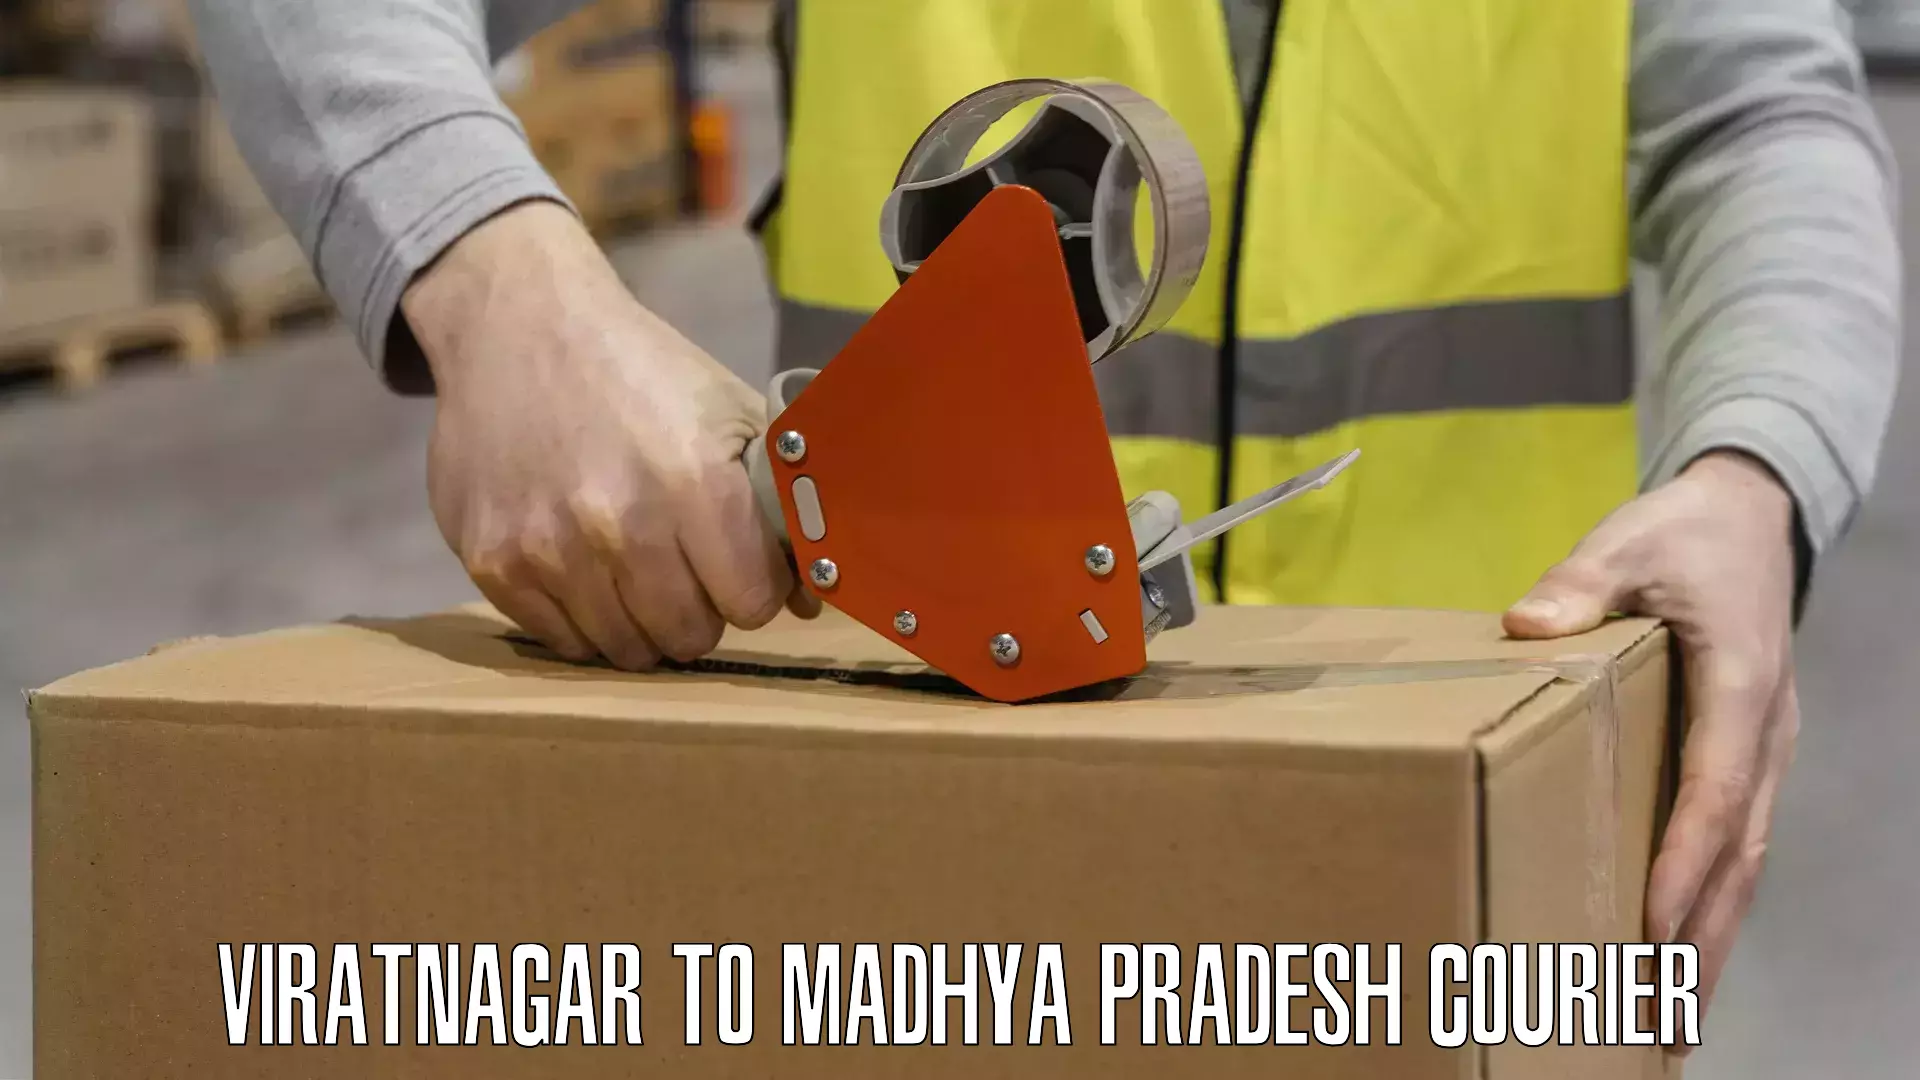 Courier insurance Viratnagar to Madhya Pradesh